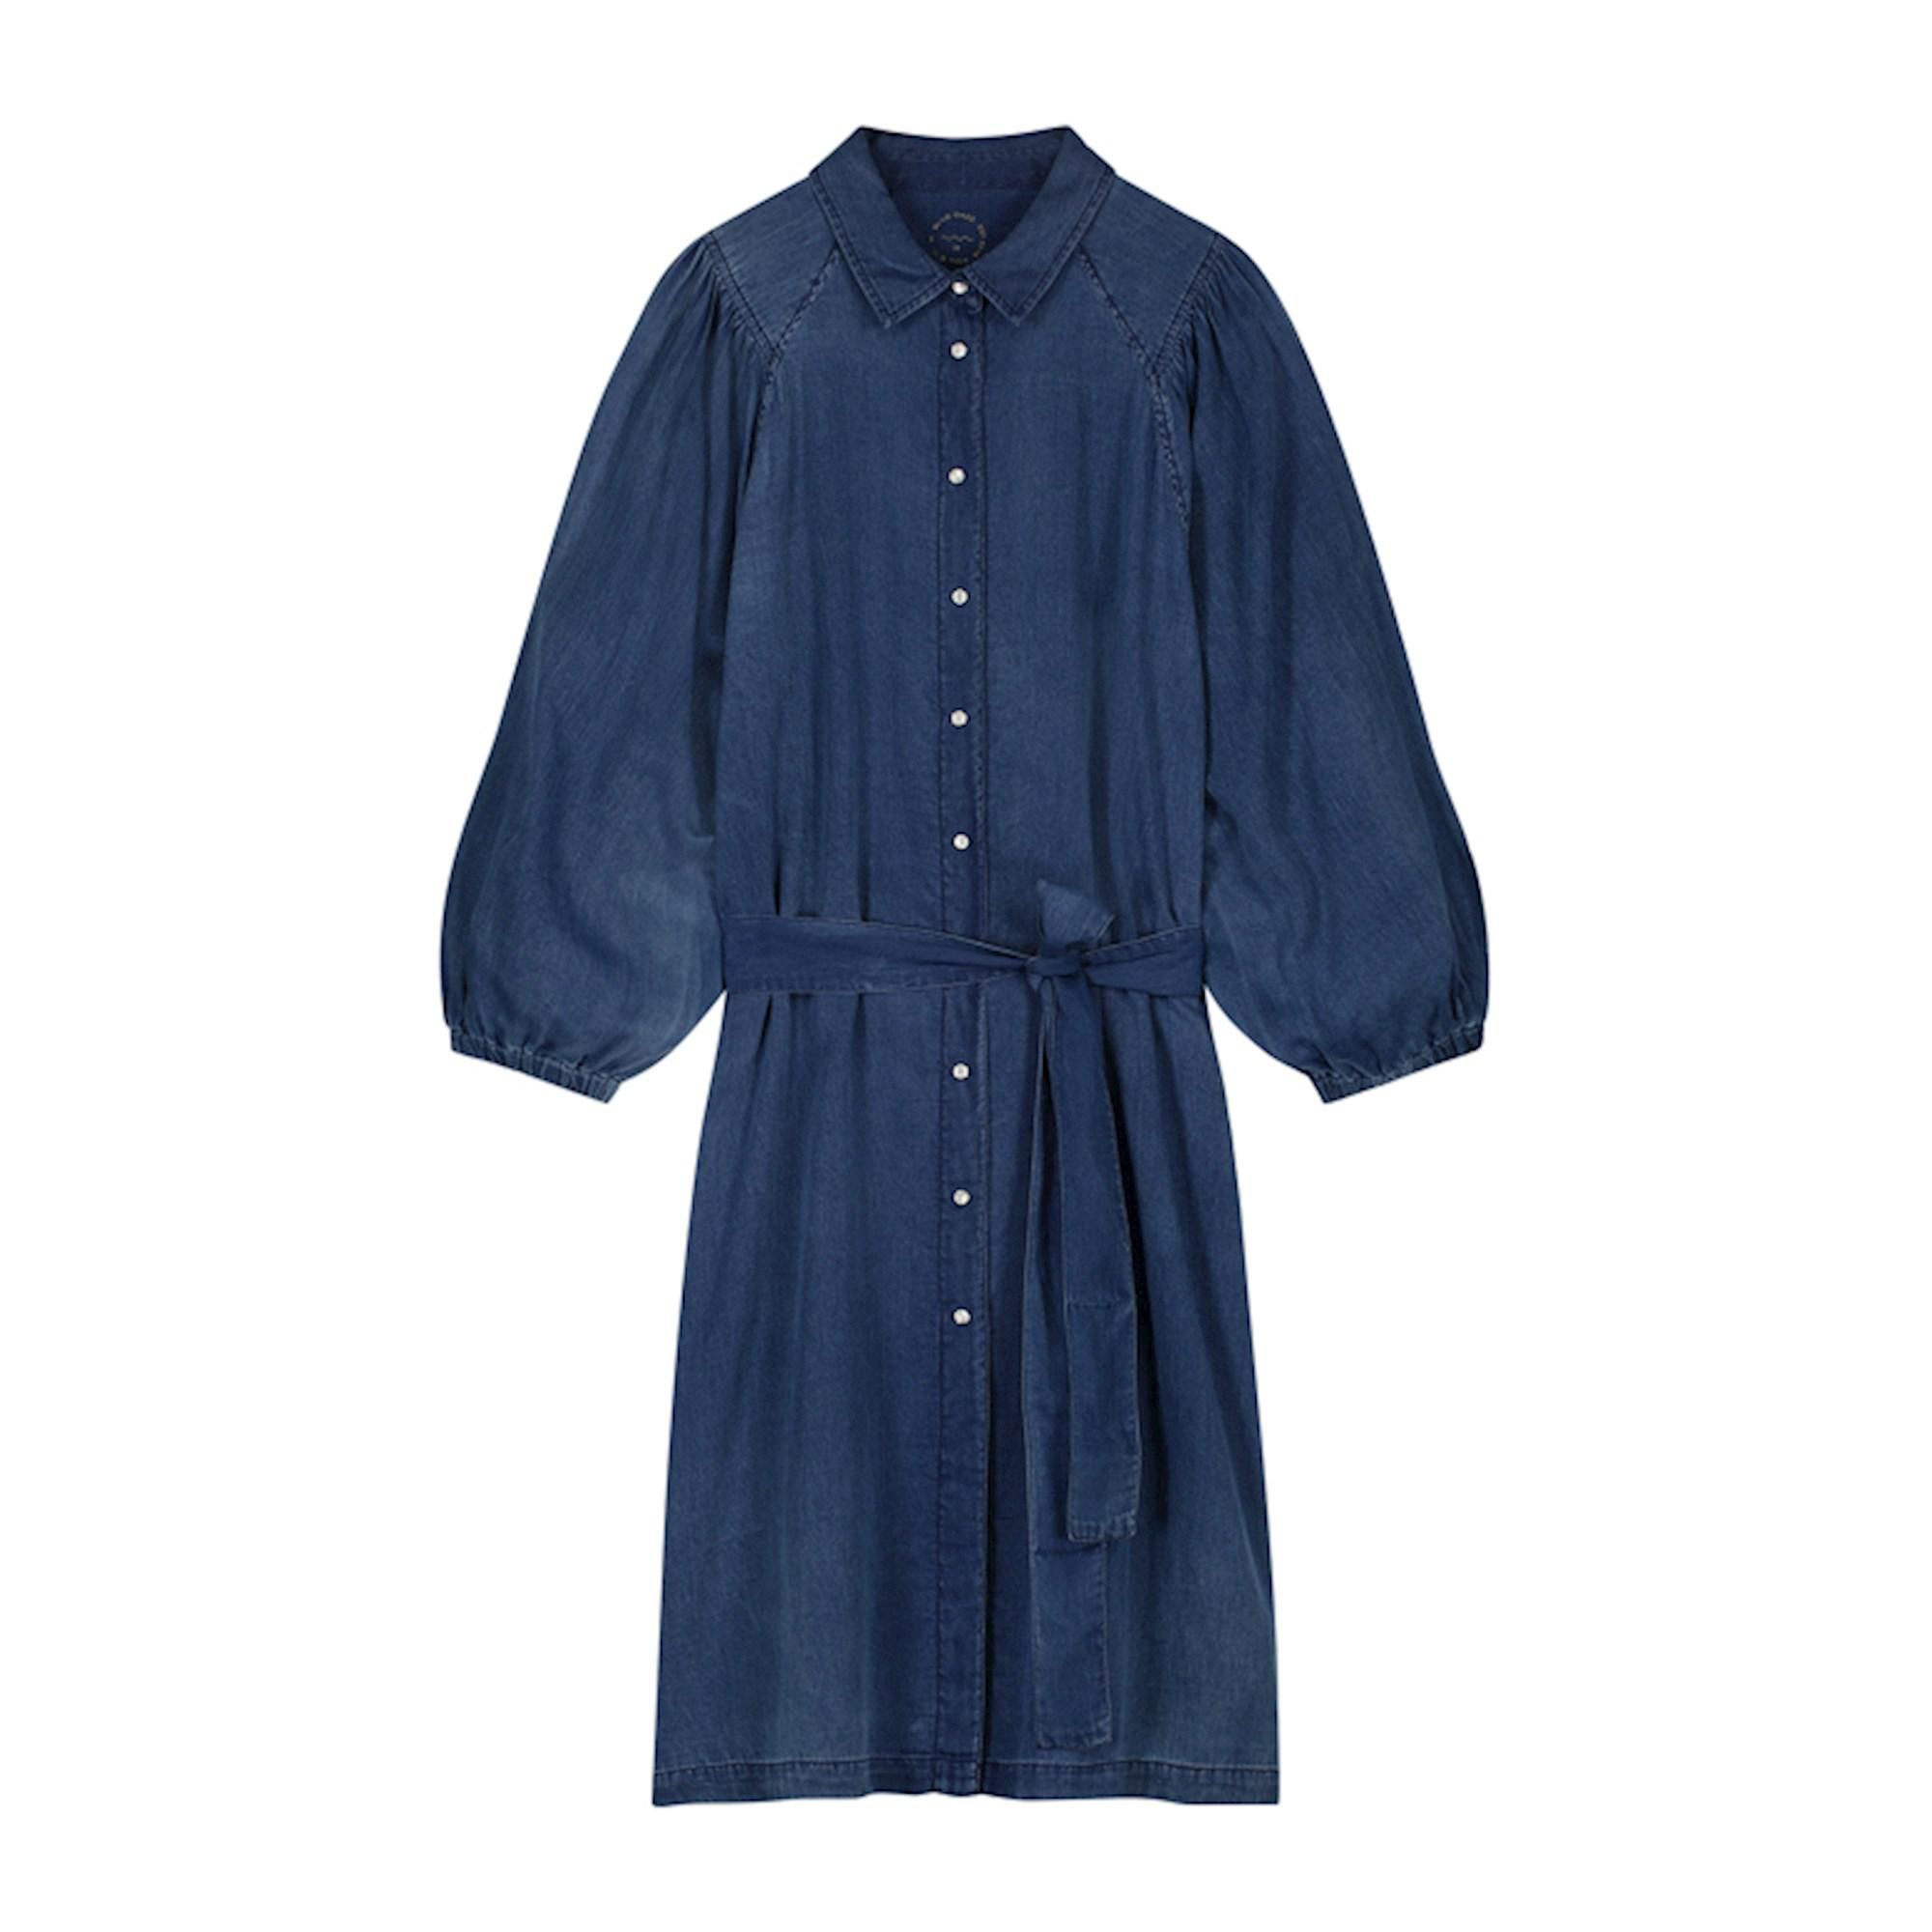 Reis Voor een dagje uit Gehoorzaamheid Summum blouse dress 5s1334 indigo online kopen bij Fier Mode.  5s1334-11631-490 Ind